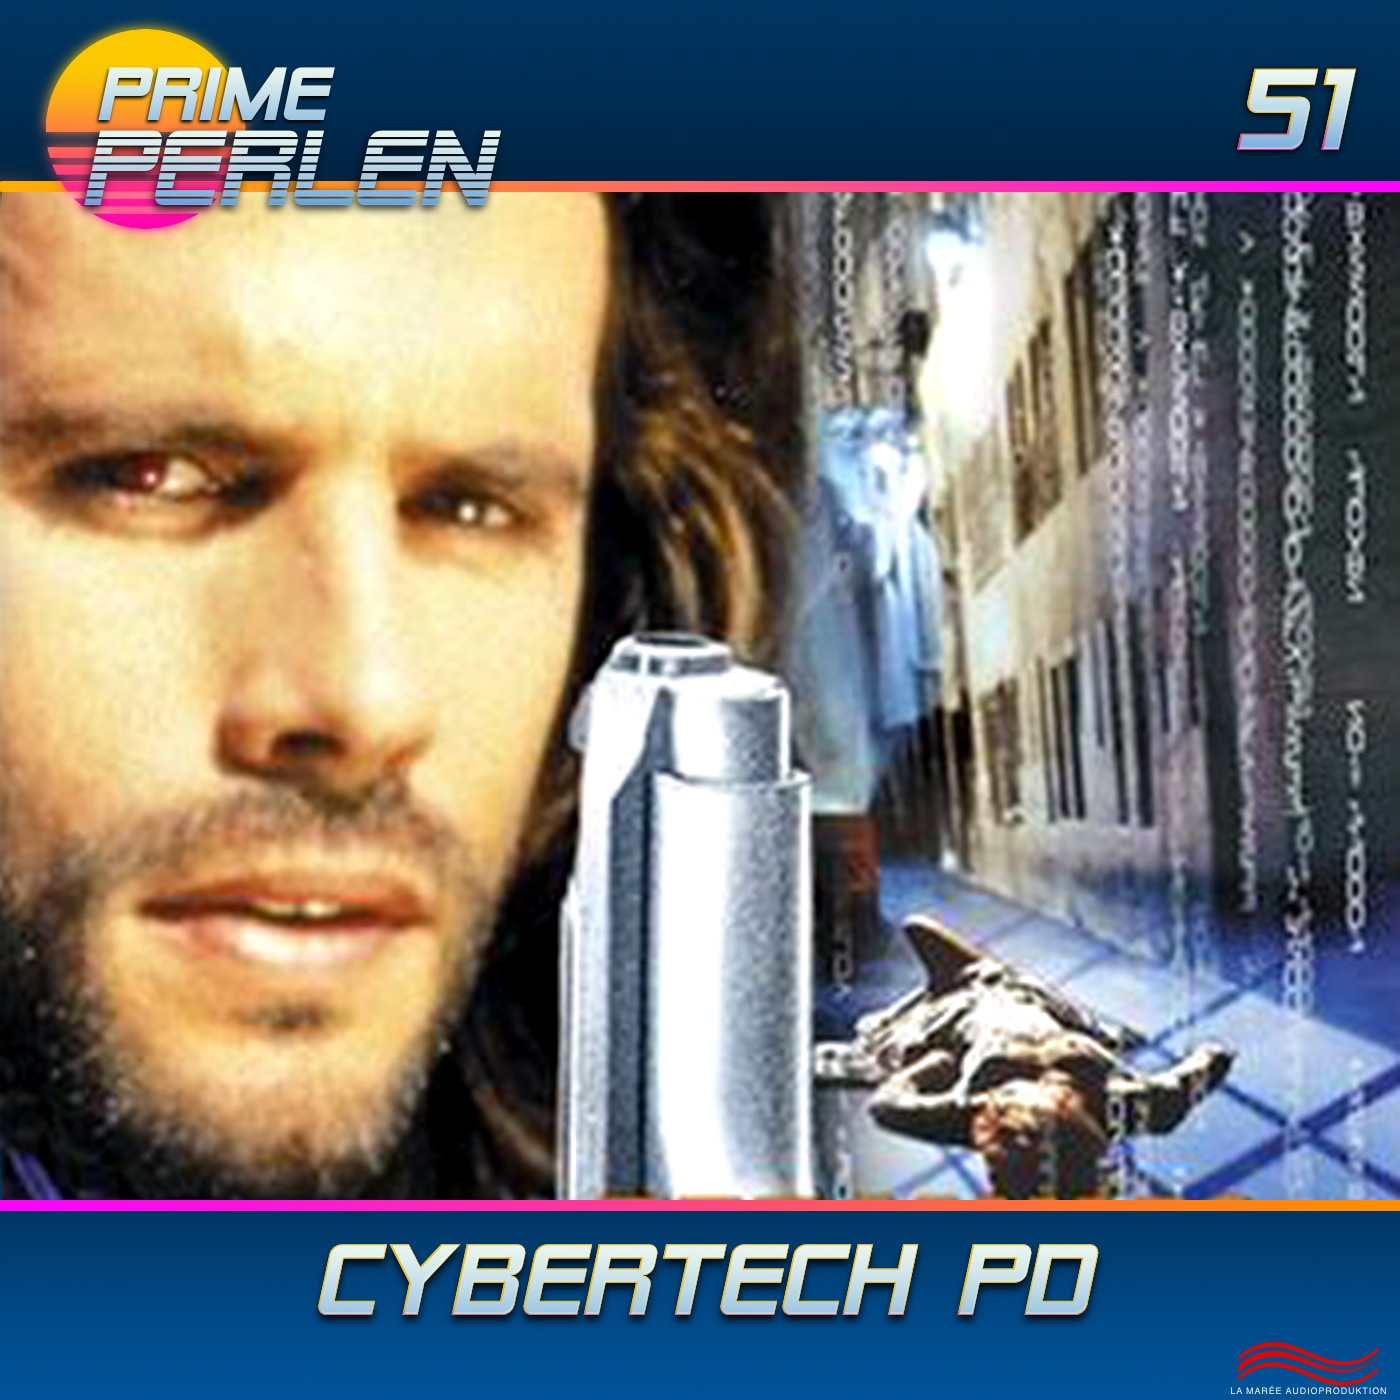 Prime Perlen #51 – Cybertech P.D.